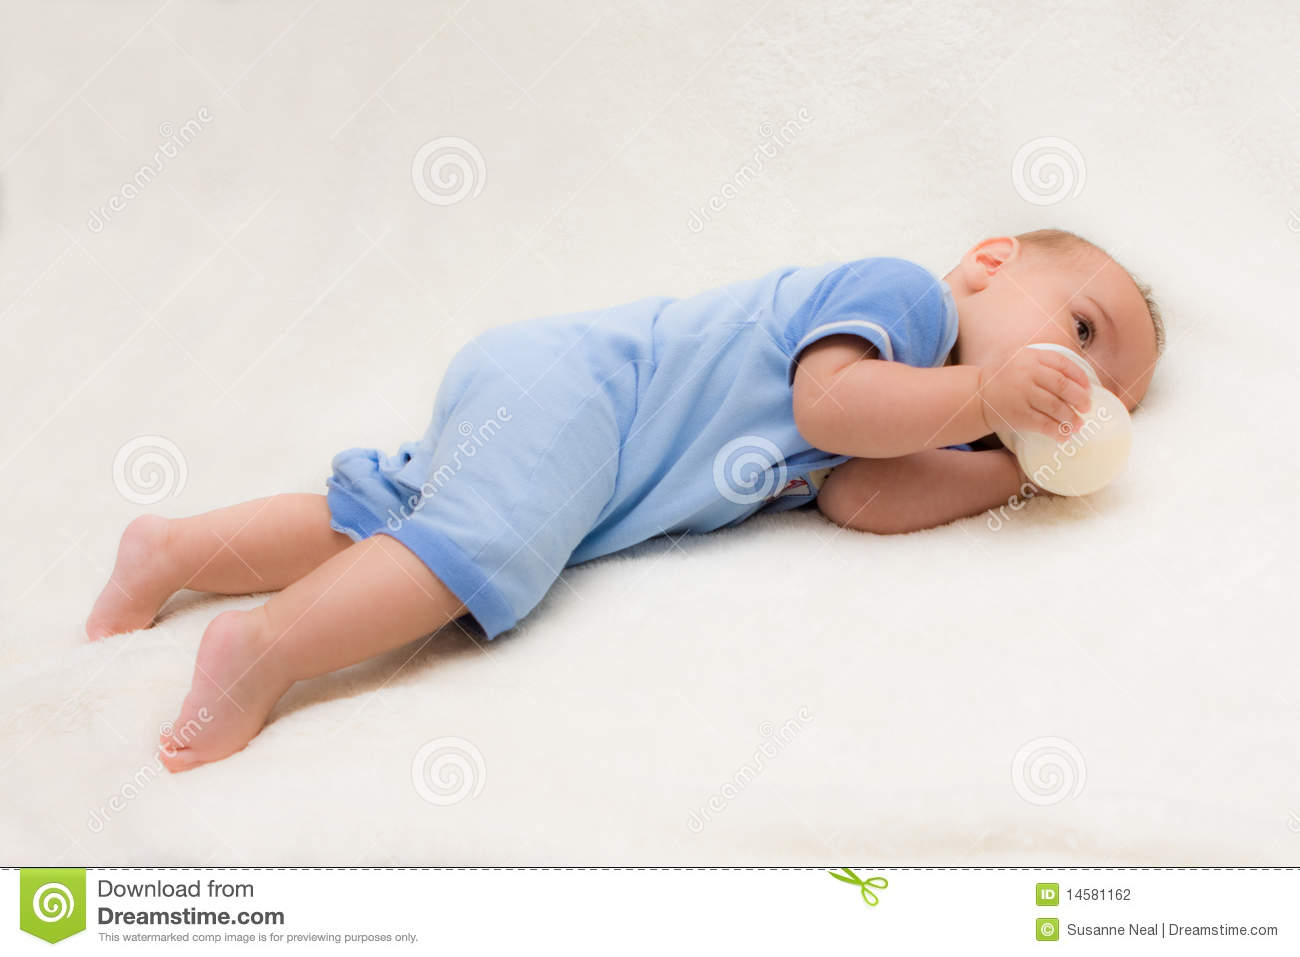 Baby Boy On Tummy Drinking Bottle Stock Photography   Image  14581162